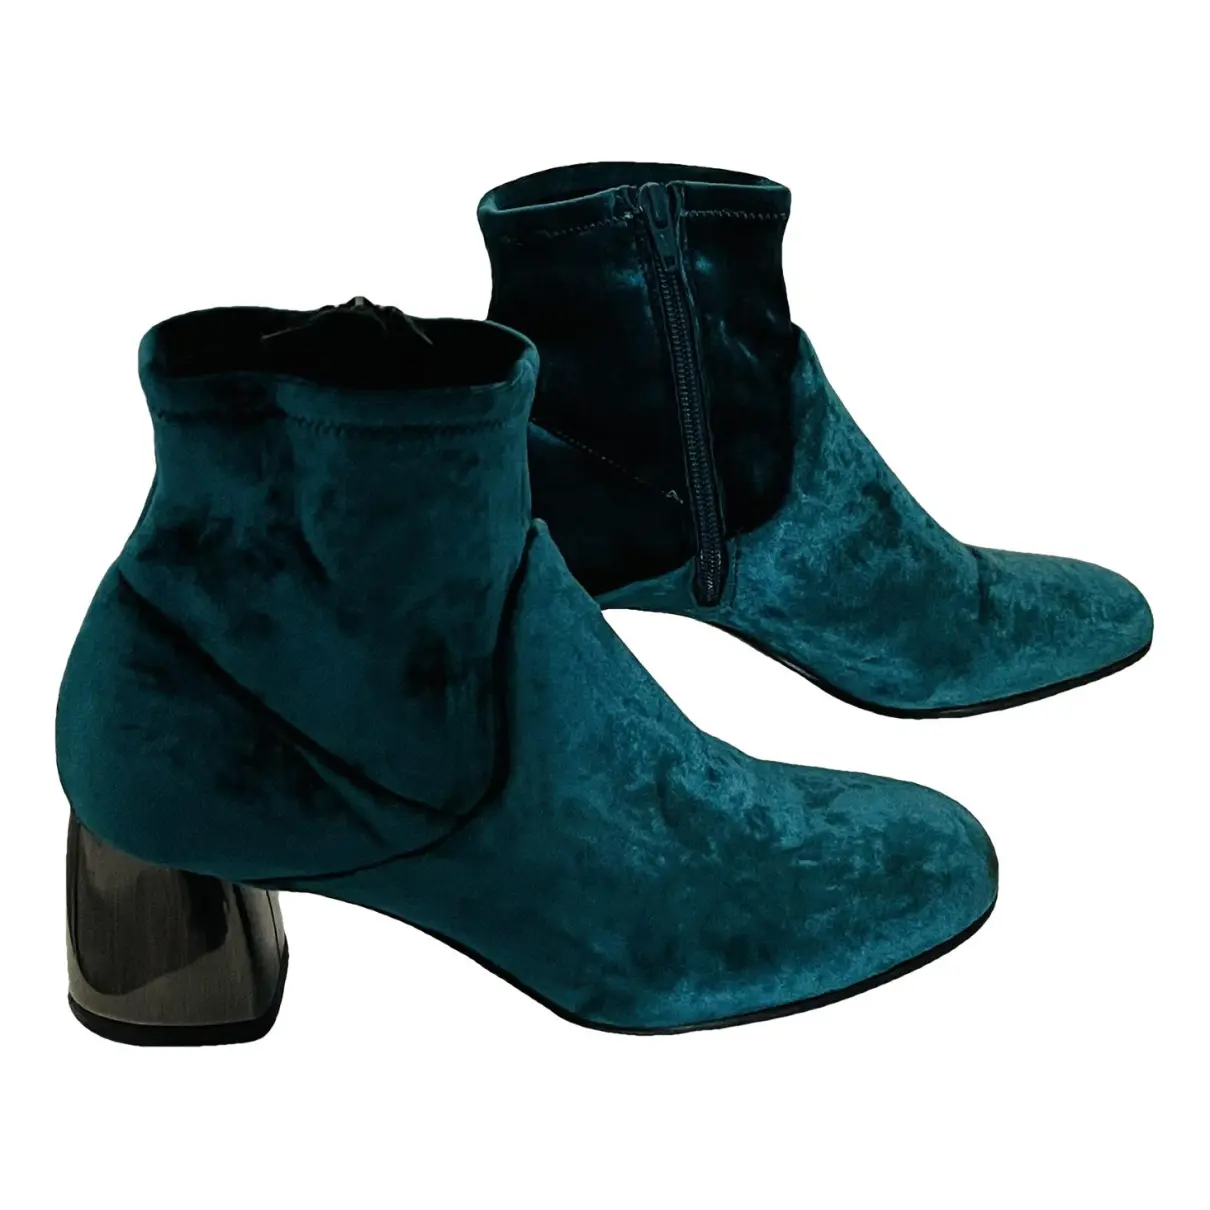 Velvet boots